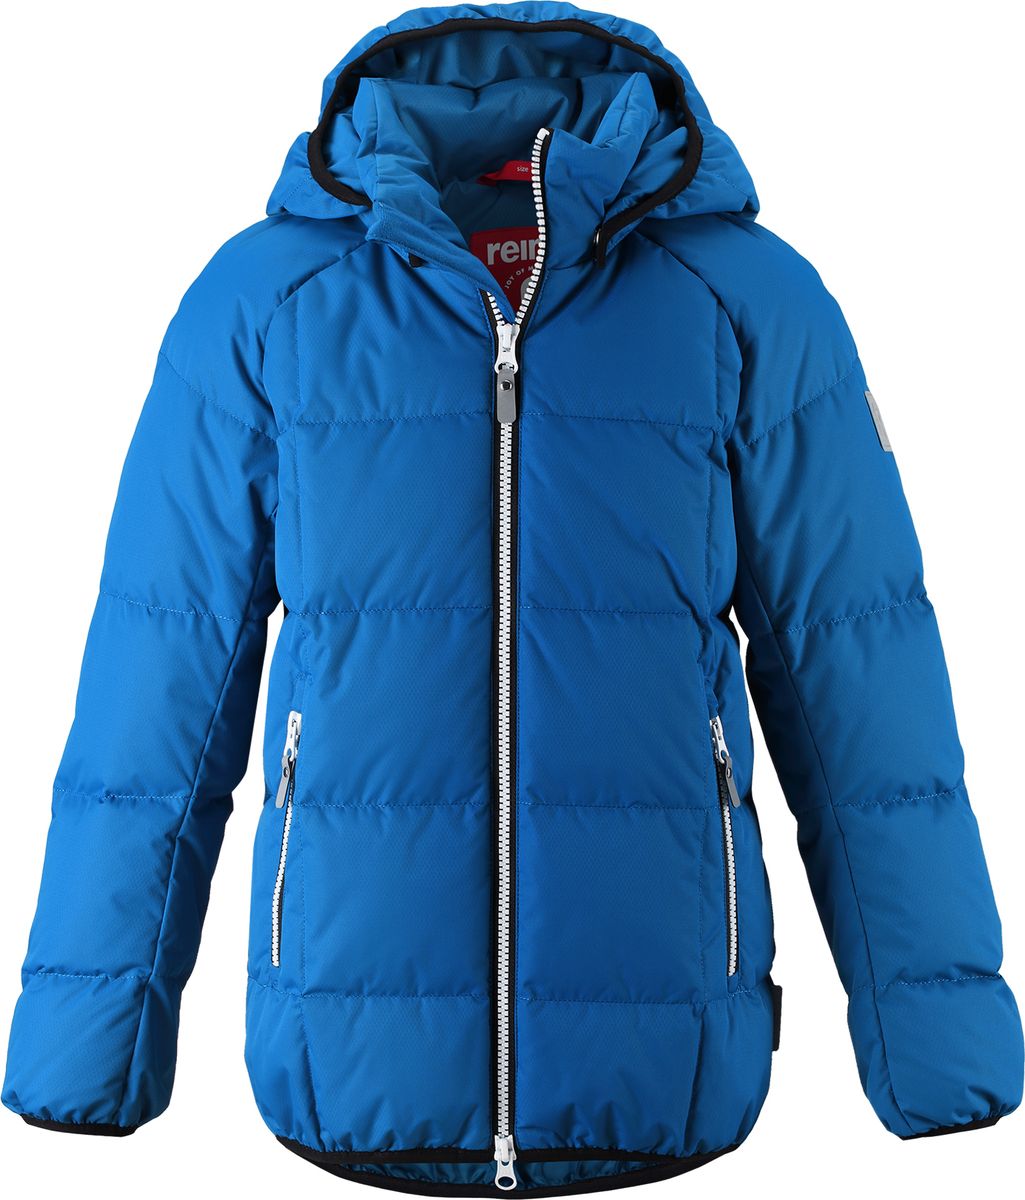 Куртка для мальчика Reima Jord, цвет: синий. 5313596680. Размер 110